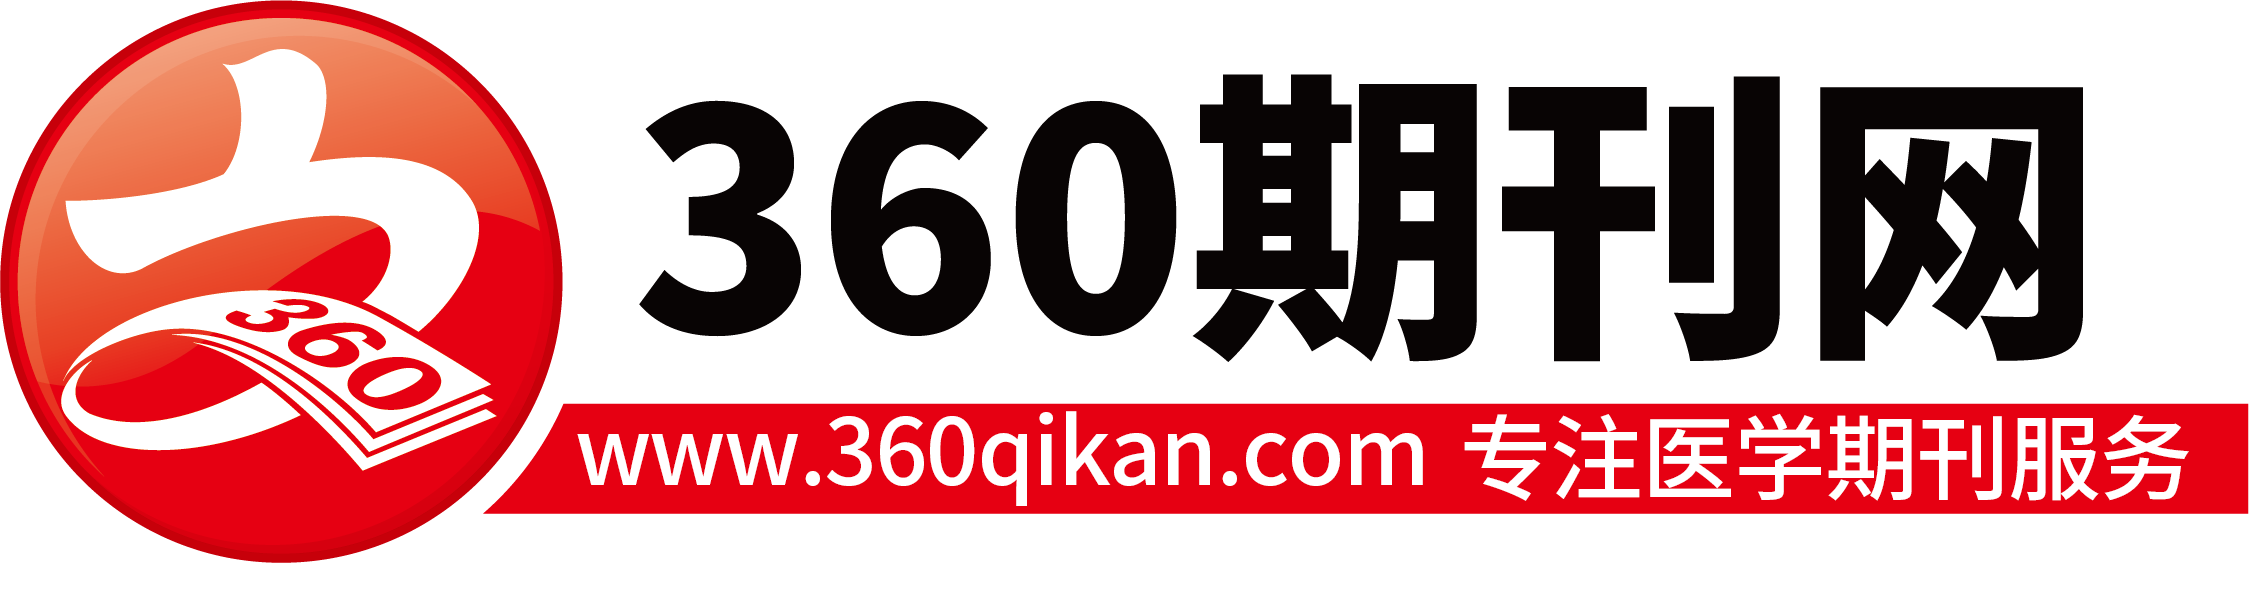 360期刊网